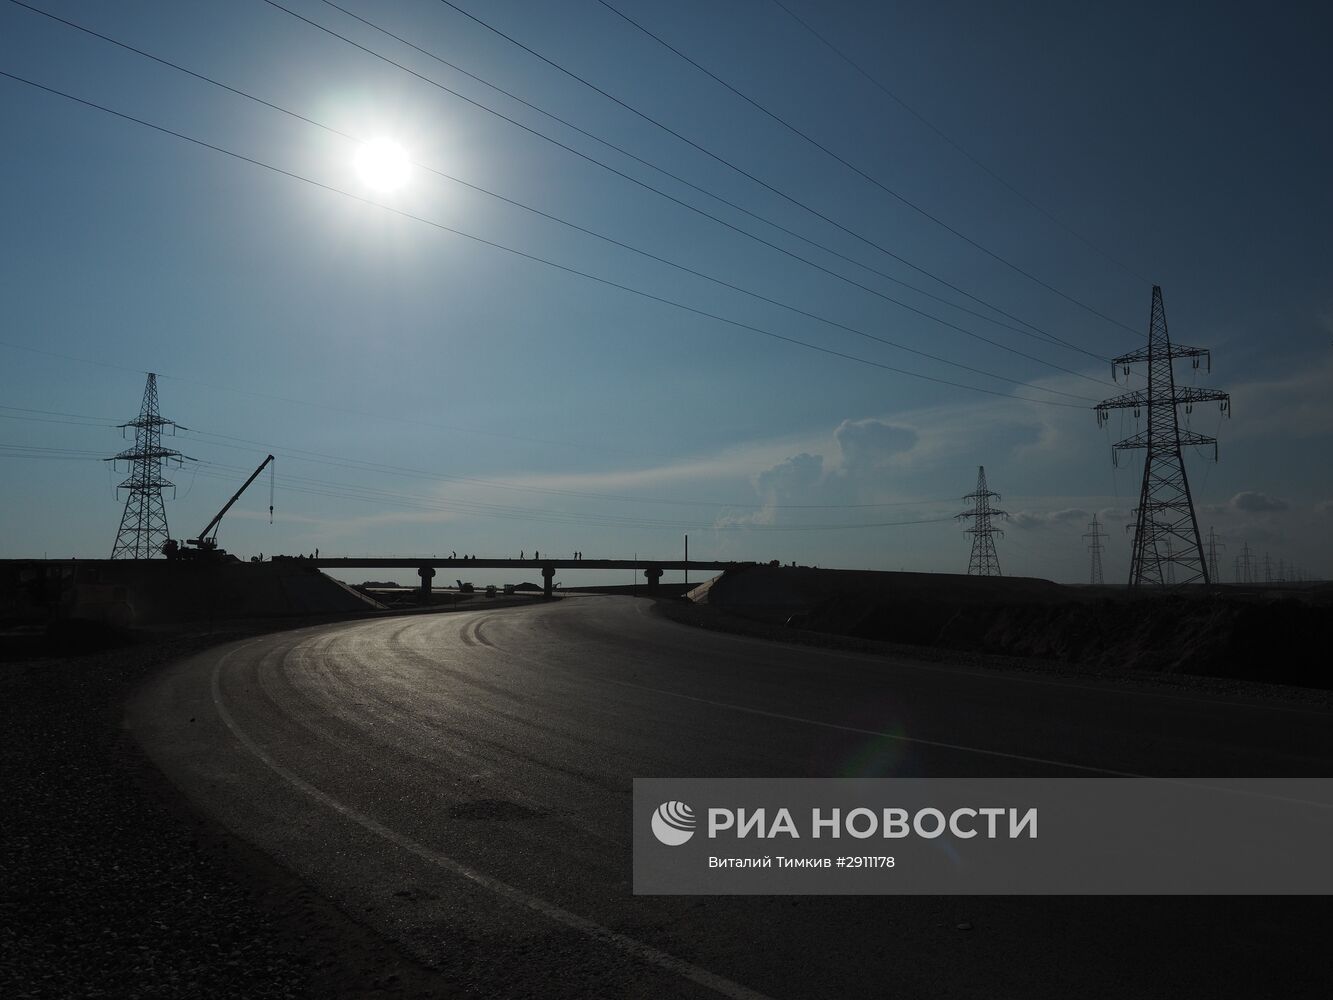 Строительная площадка новой трассы в Крым